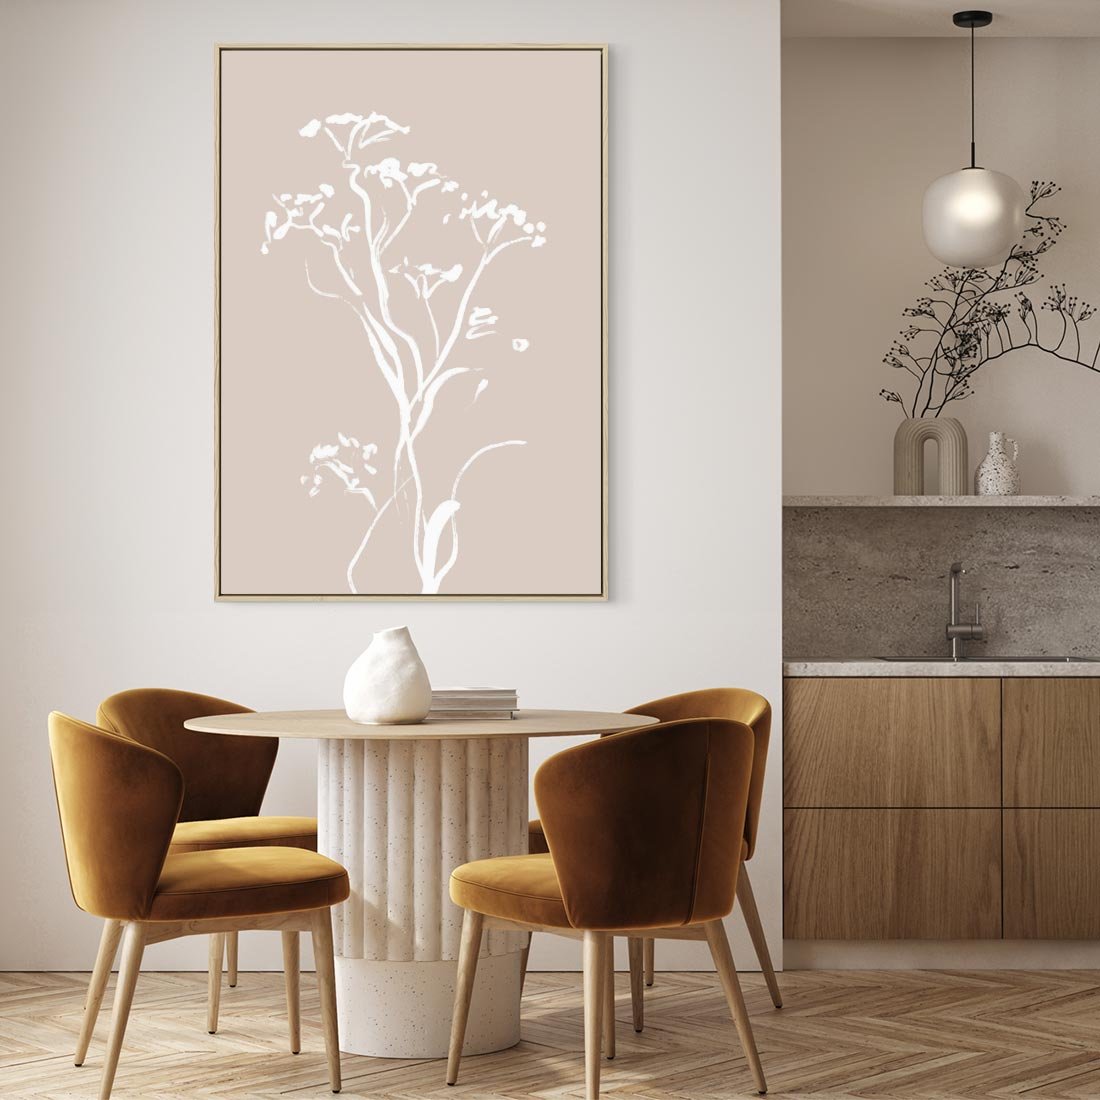 Obraz w ramie 50x70 - Harmonijne Mini Boho - minimalistyczny delikatny obraz, beżowe odcienie - rama drewno